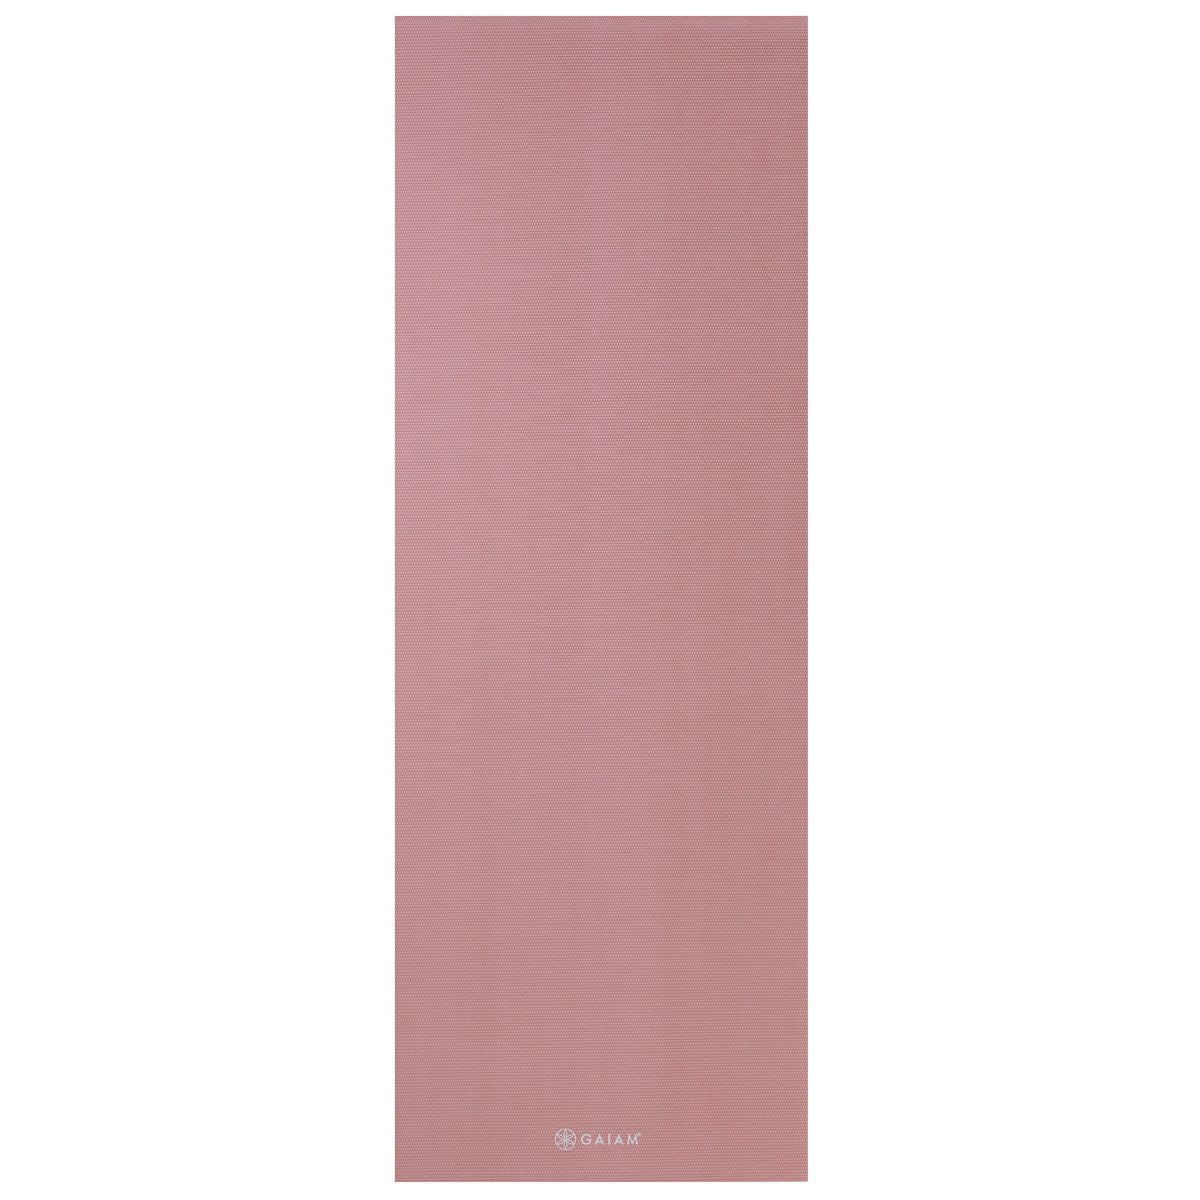 Gaiam Classic Solid Color Yoga Mat (5mm) Lilac flat